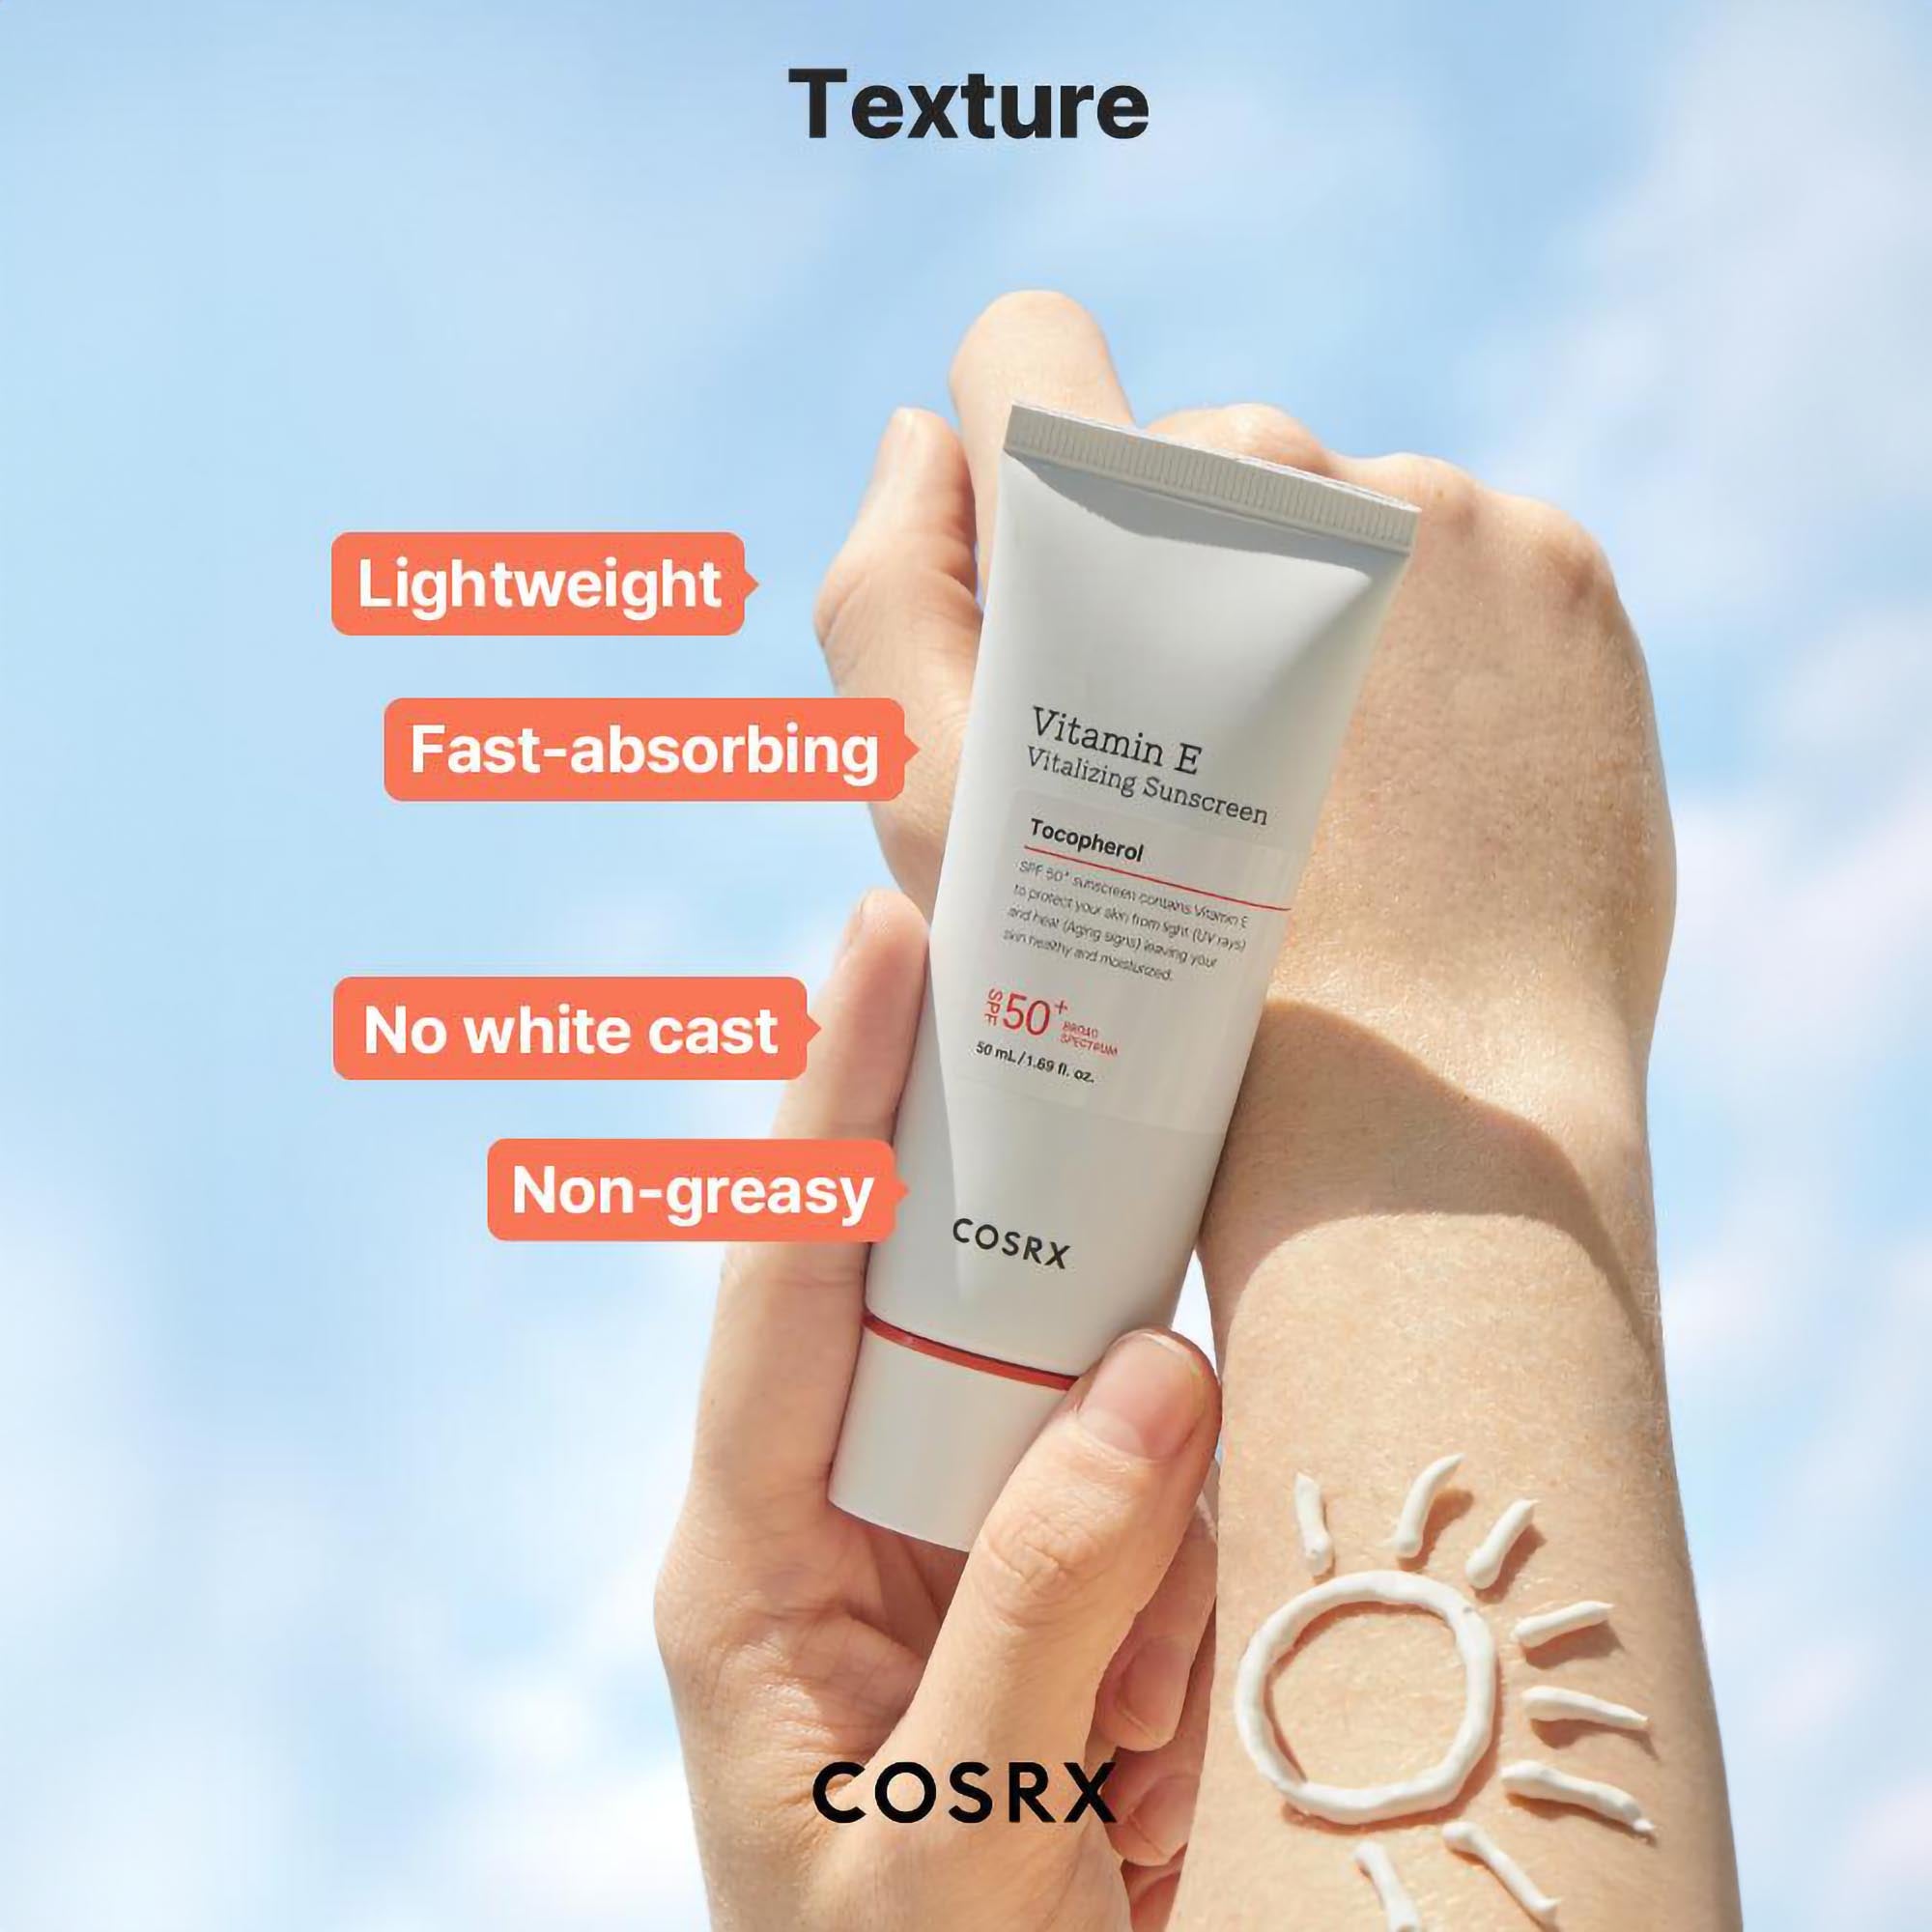 COSRX Vitamin E Vitalizing Sunscreen SPF 50+ / 1.6OZ